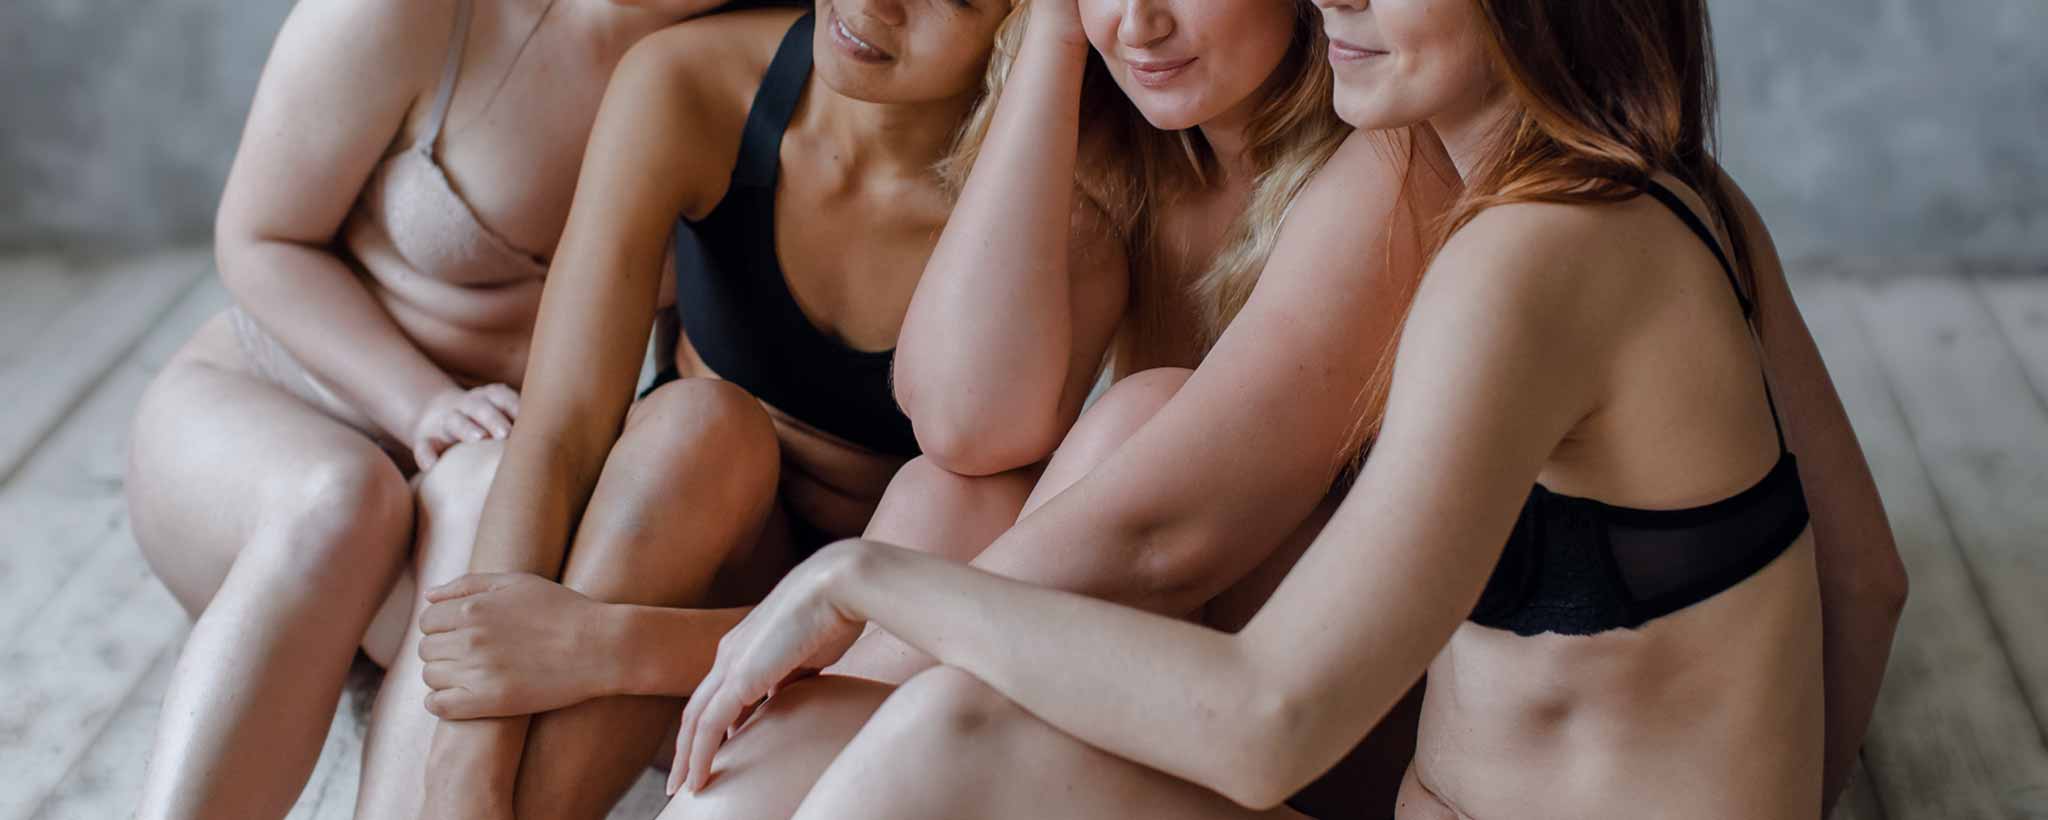 'Four female in underwear'